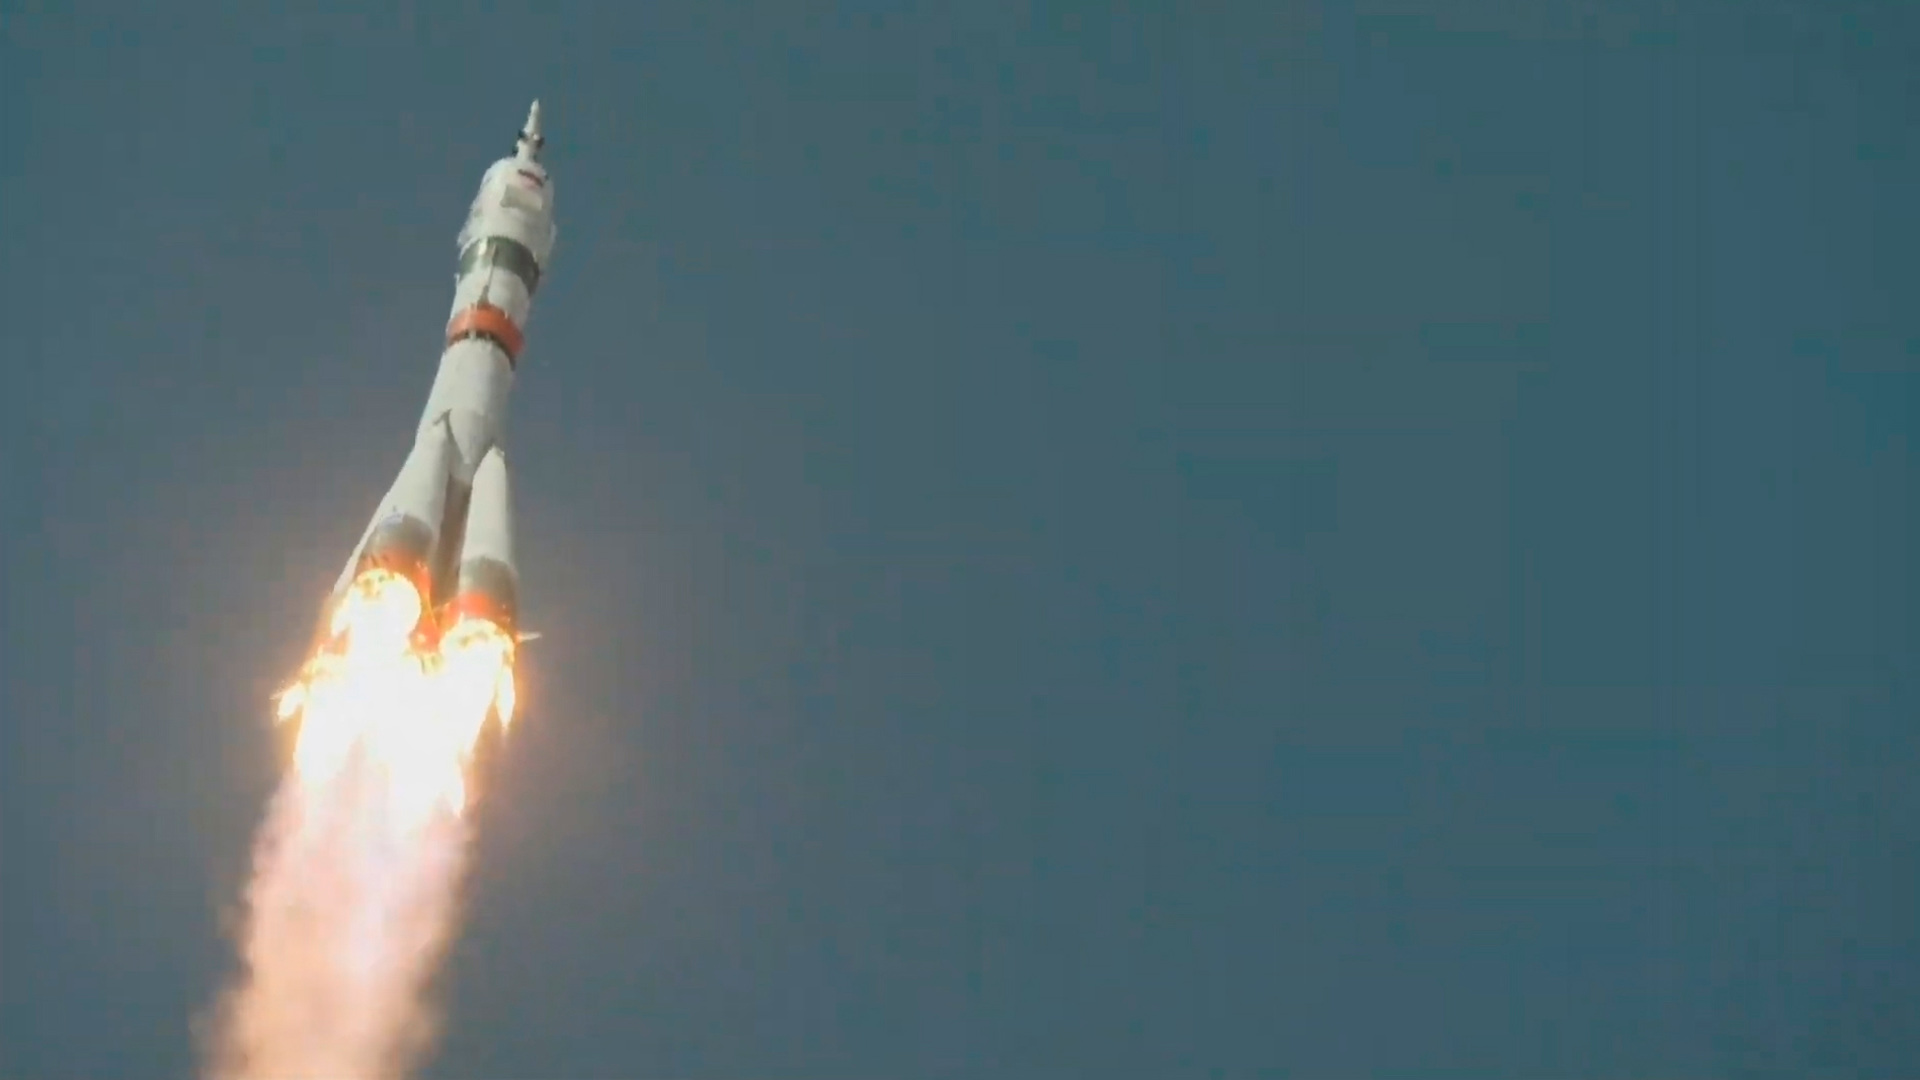 фото юрия гагарина с ракетой